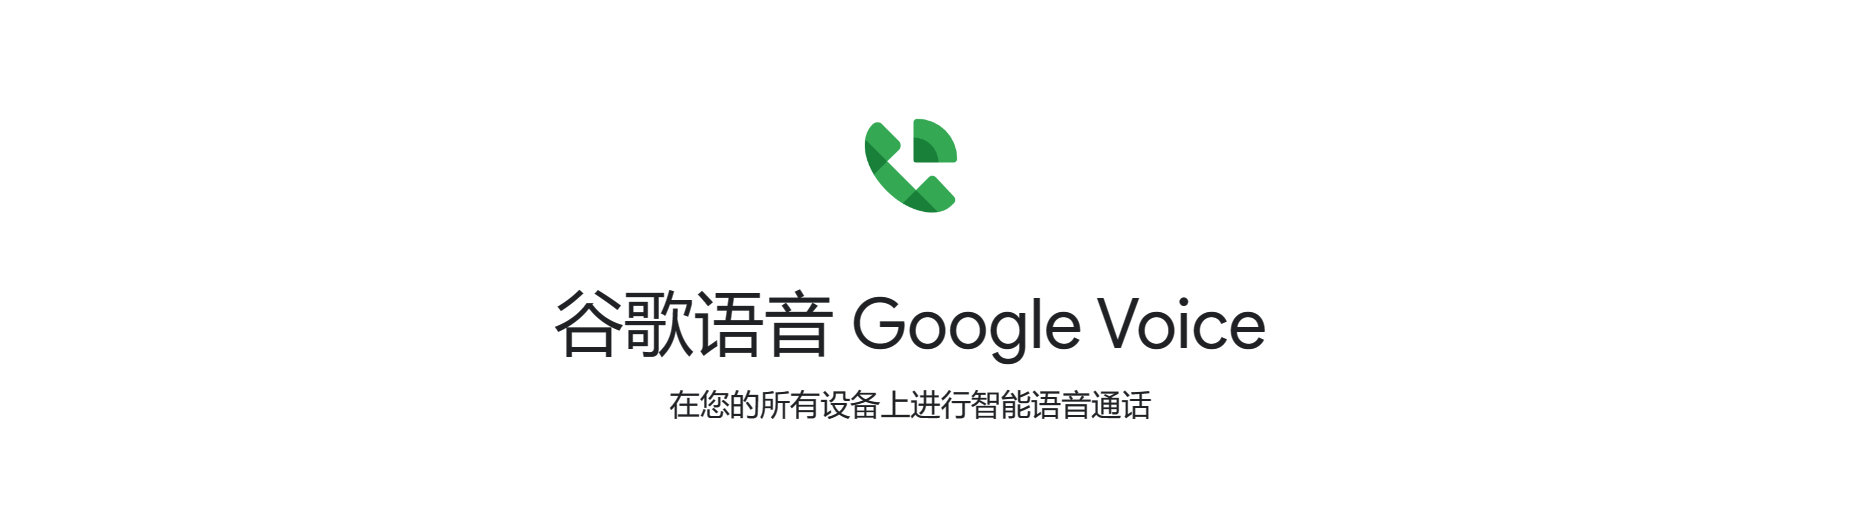 谷歌语音Google Voice账号购买